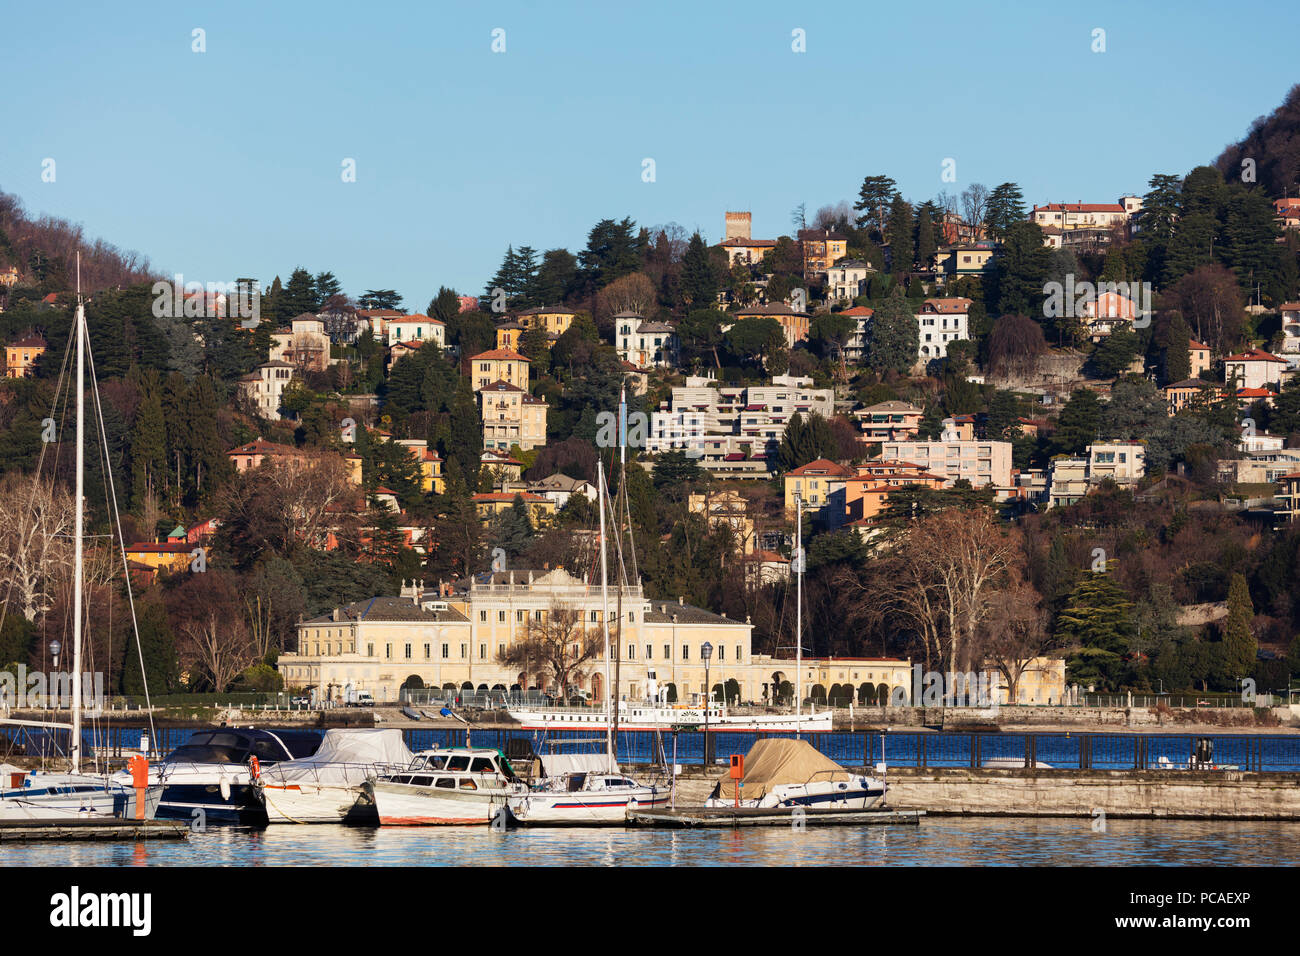 Villa Olmo in architettura neoclassica, la città di Como, il lago di Como, Lombardia, laghi italiani, l'Italia, Europa Foto Stock